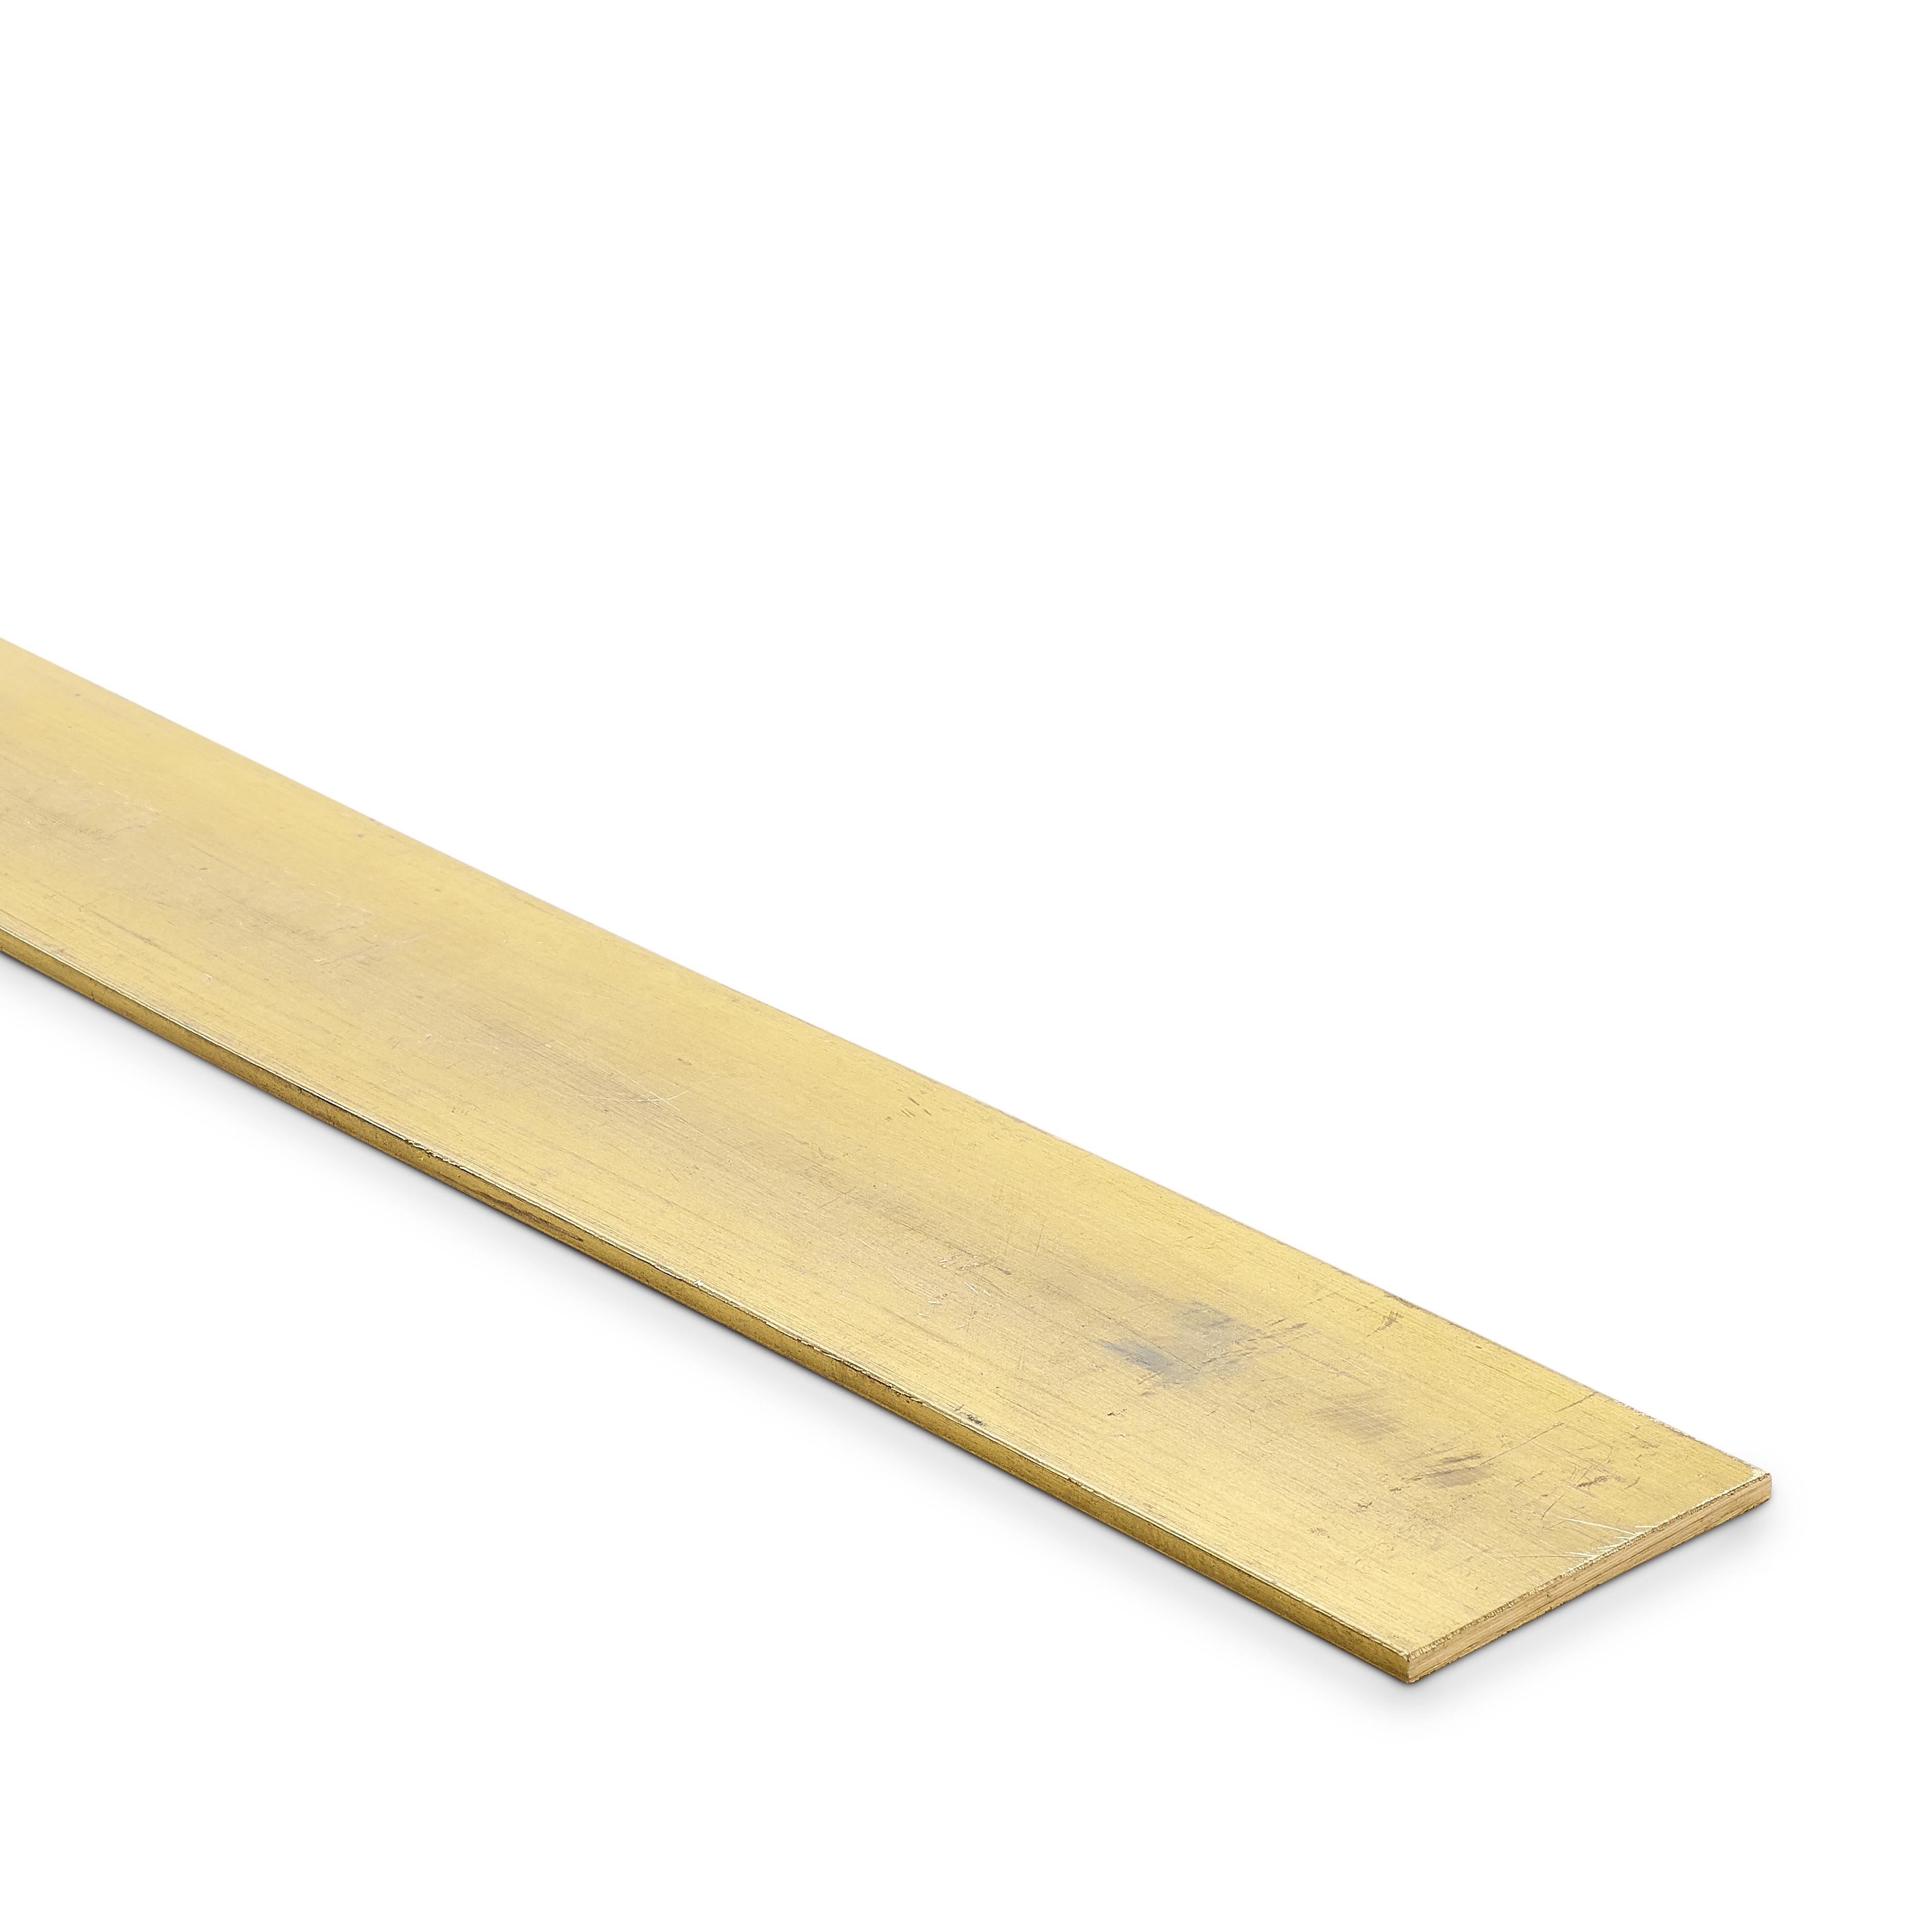 1/2 x 1/8 Brass Flat Bar - 500mm long